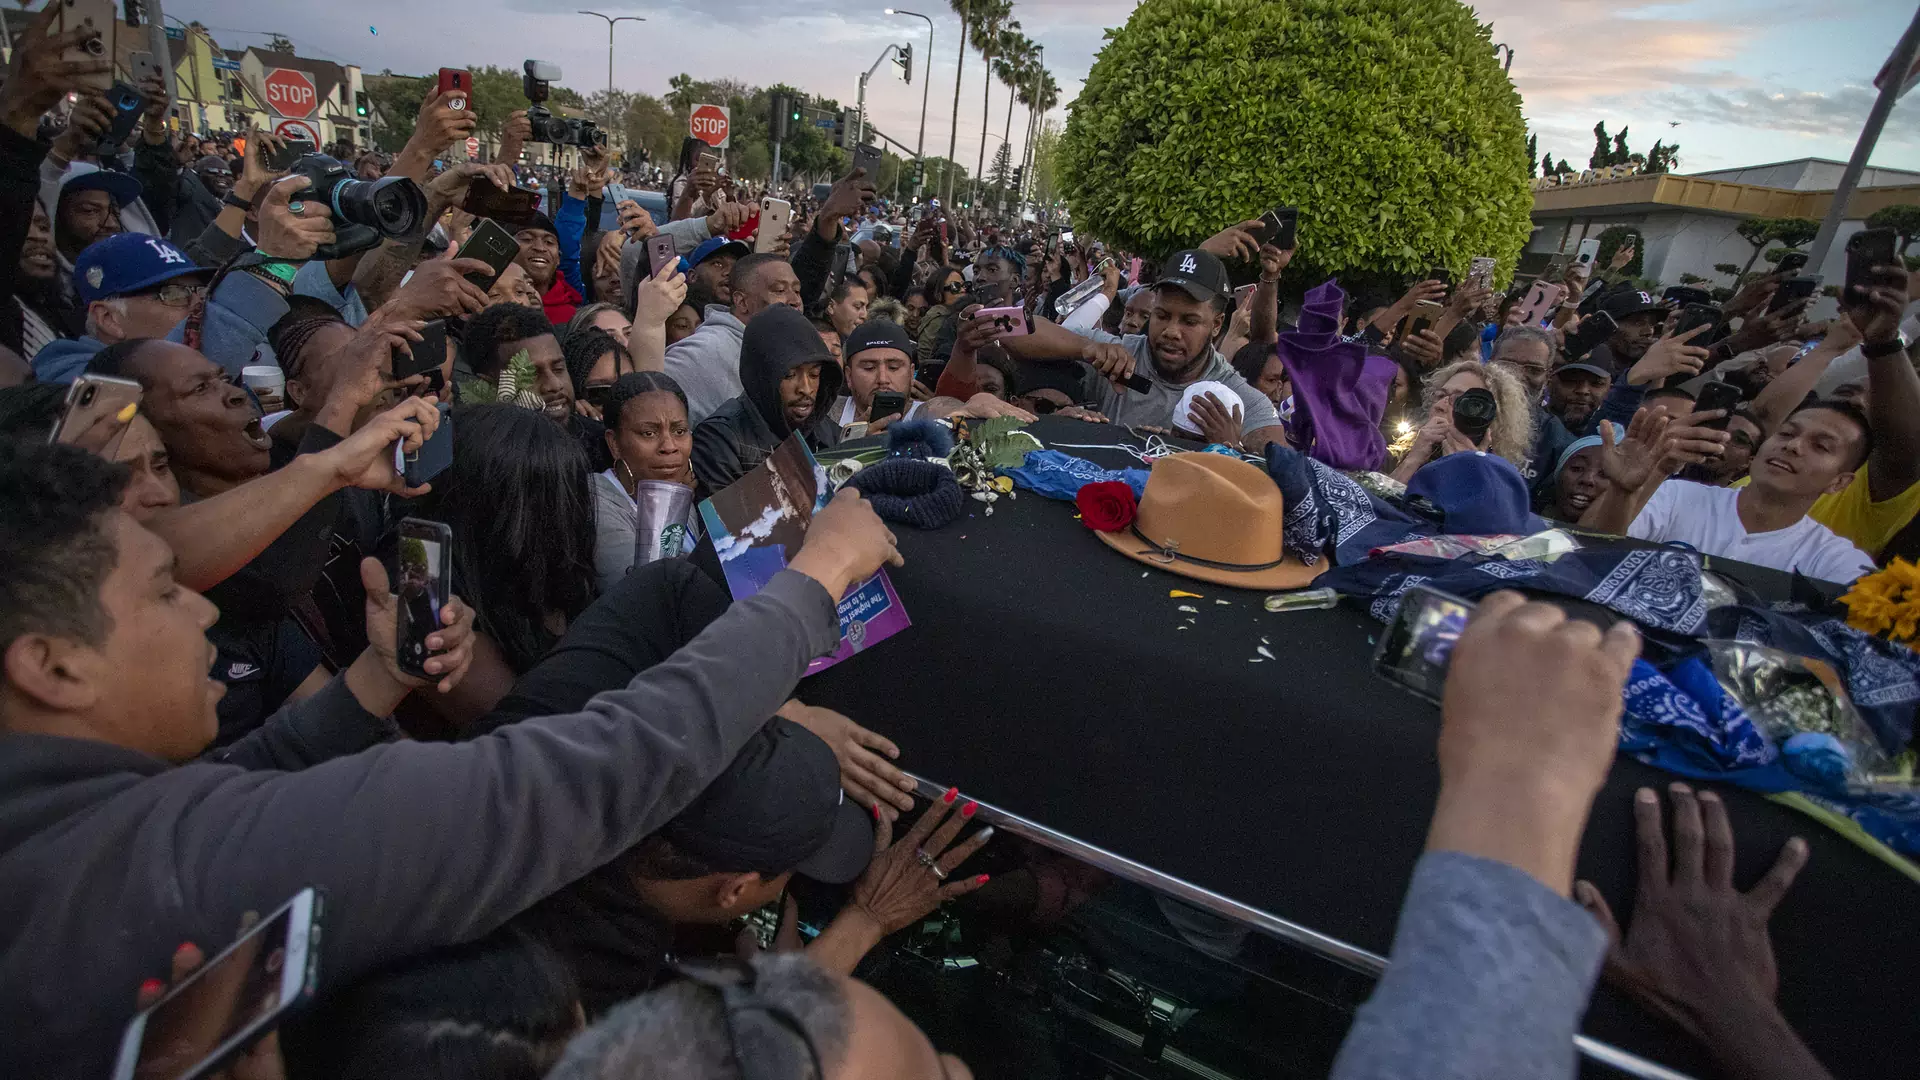 Strzelanina podczas pogrzebu Nipsey Hussle'a. Jedna osoba nie żyje